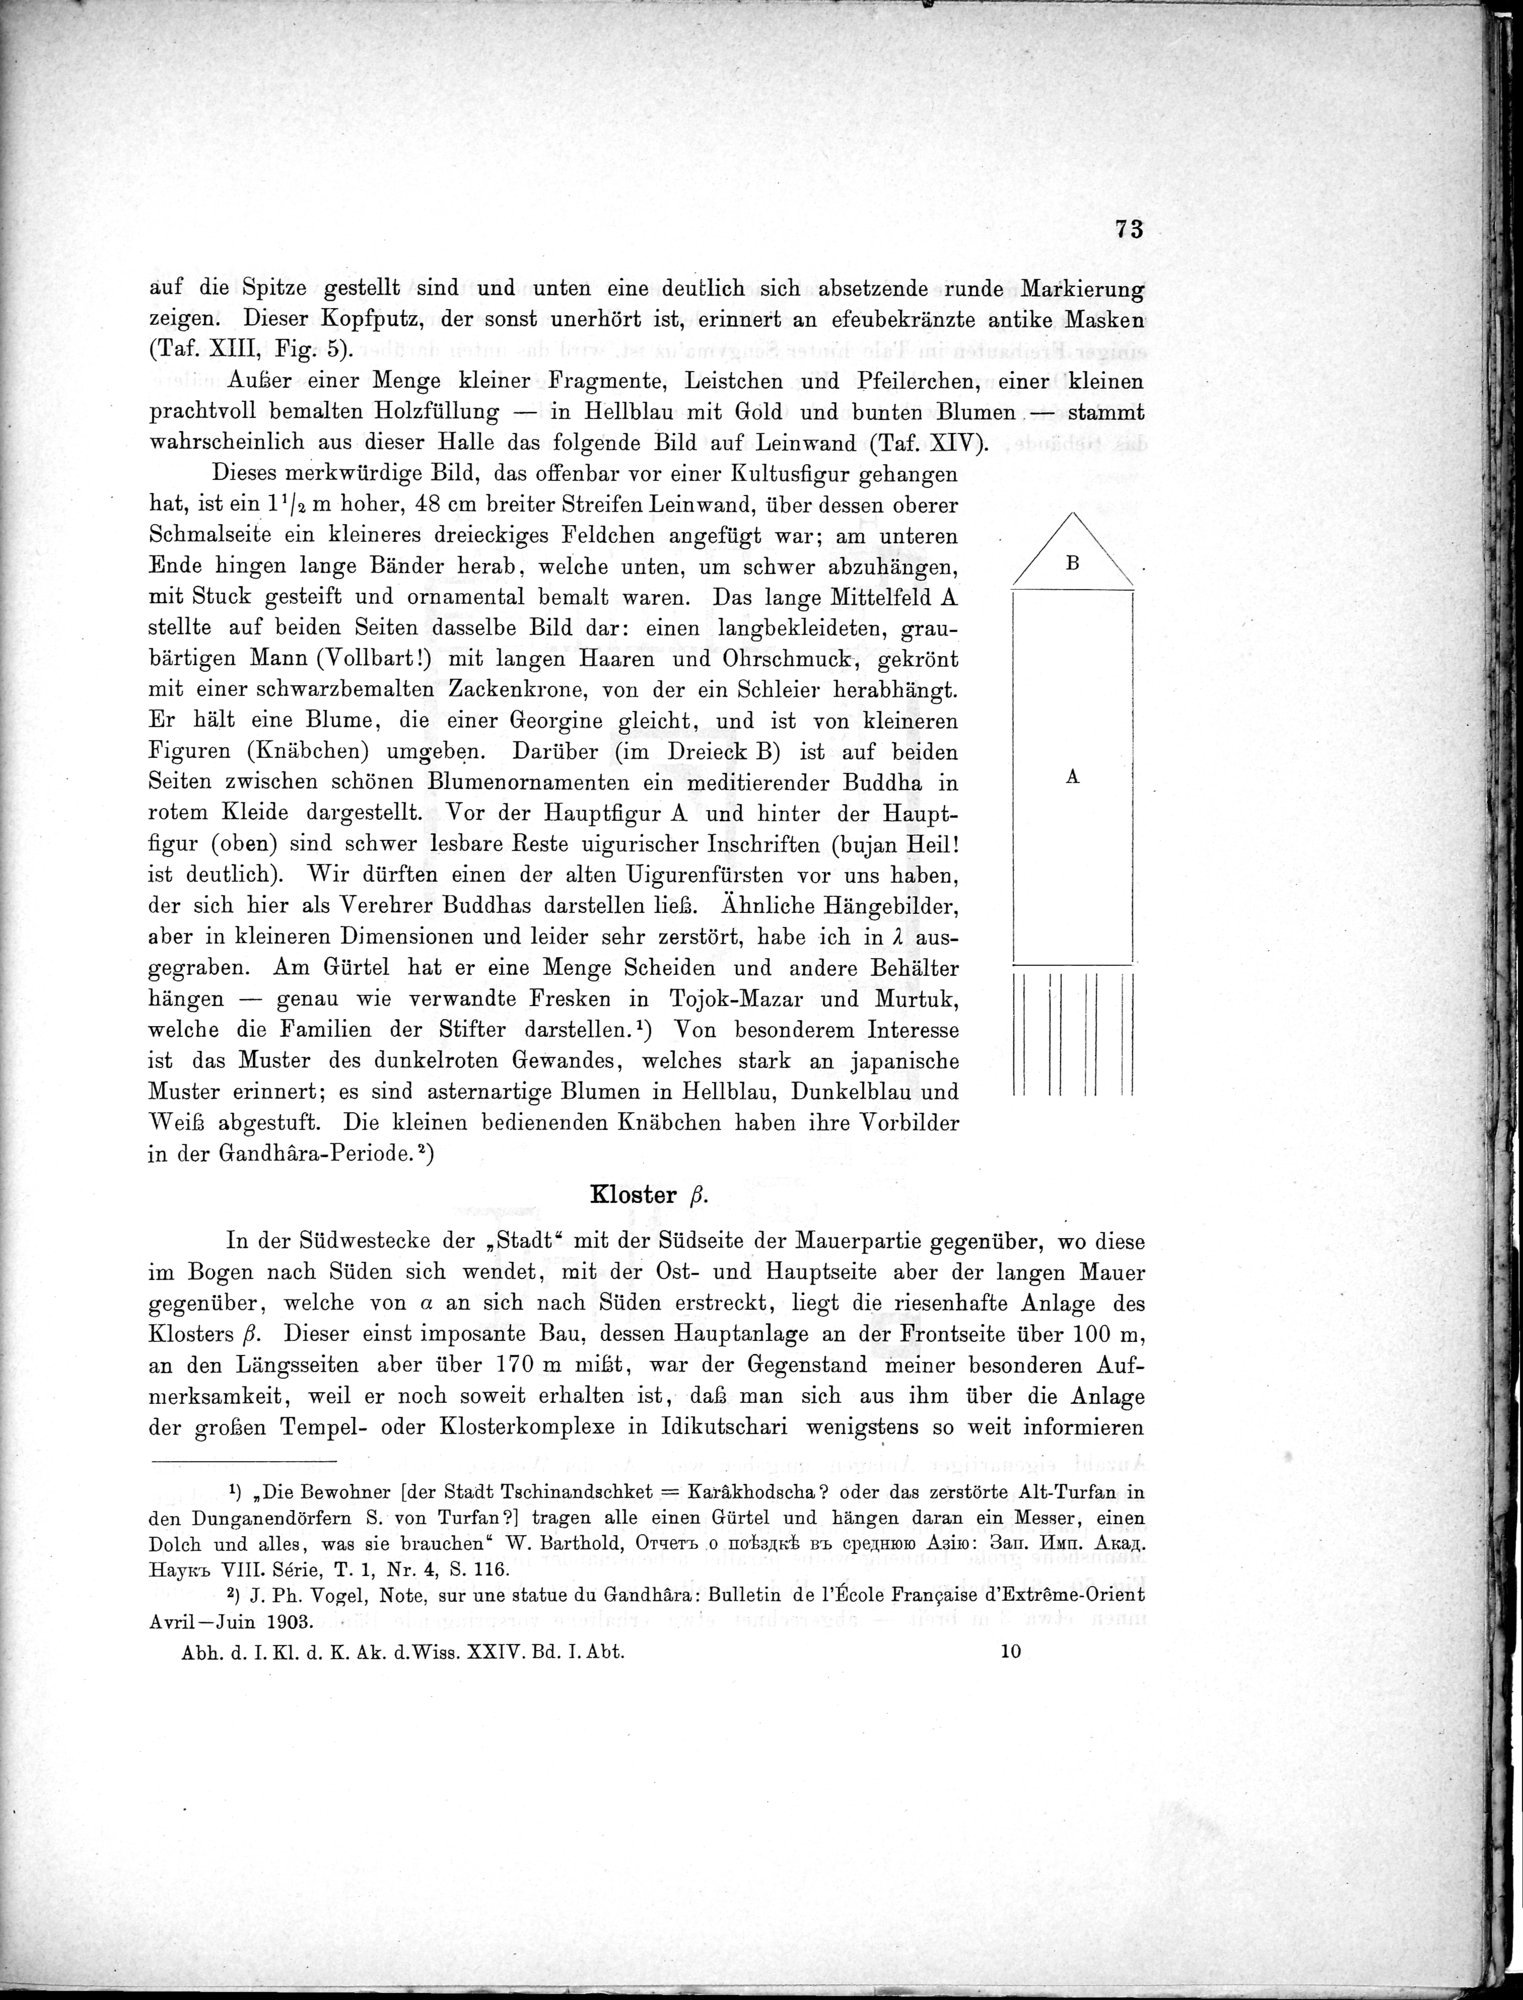 Bericht über archäologische Arbeiten in Idikutschari und Umgebung im Winter 1902-1903 : vol.1 / Page 83 (Grayscale High Resolution Image)